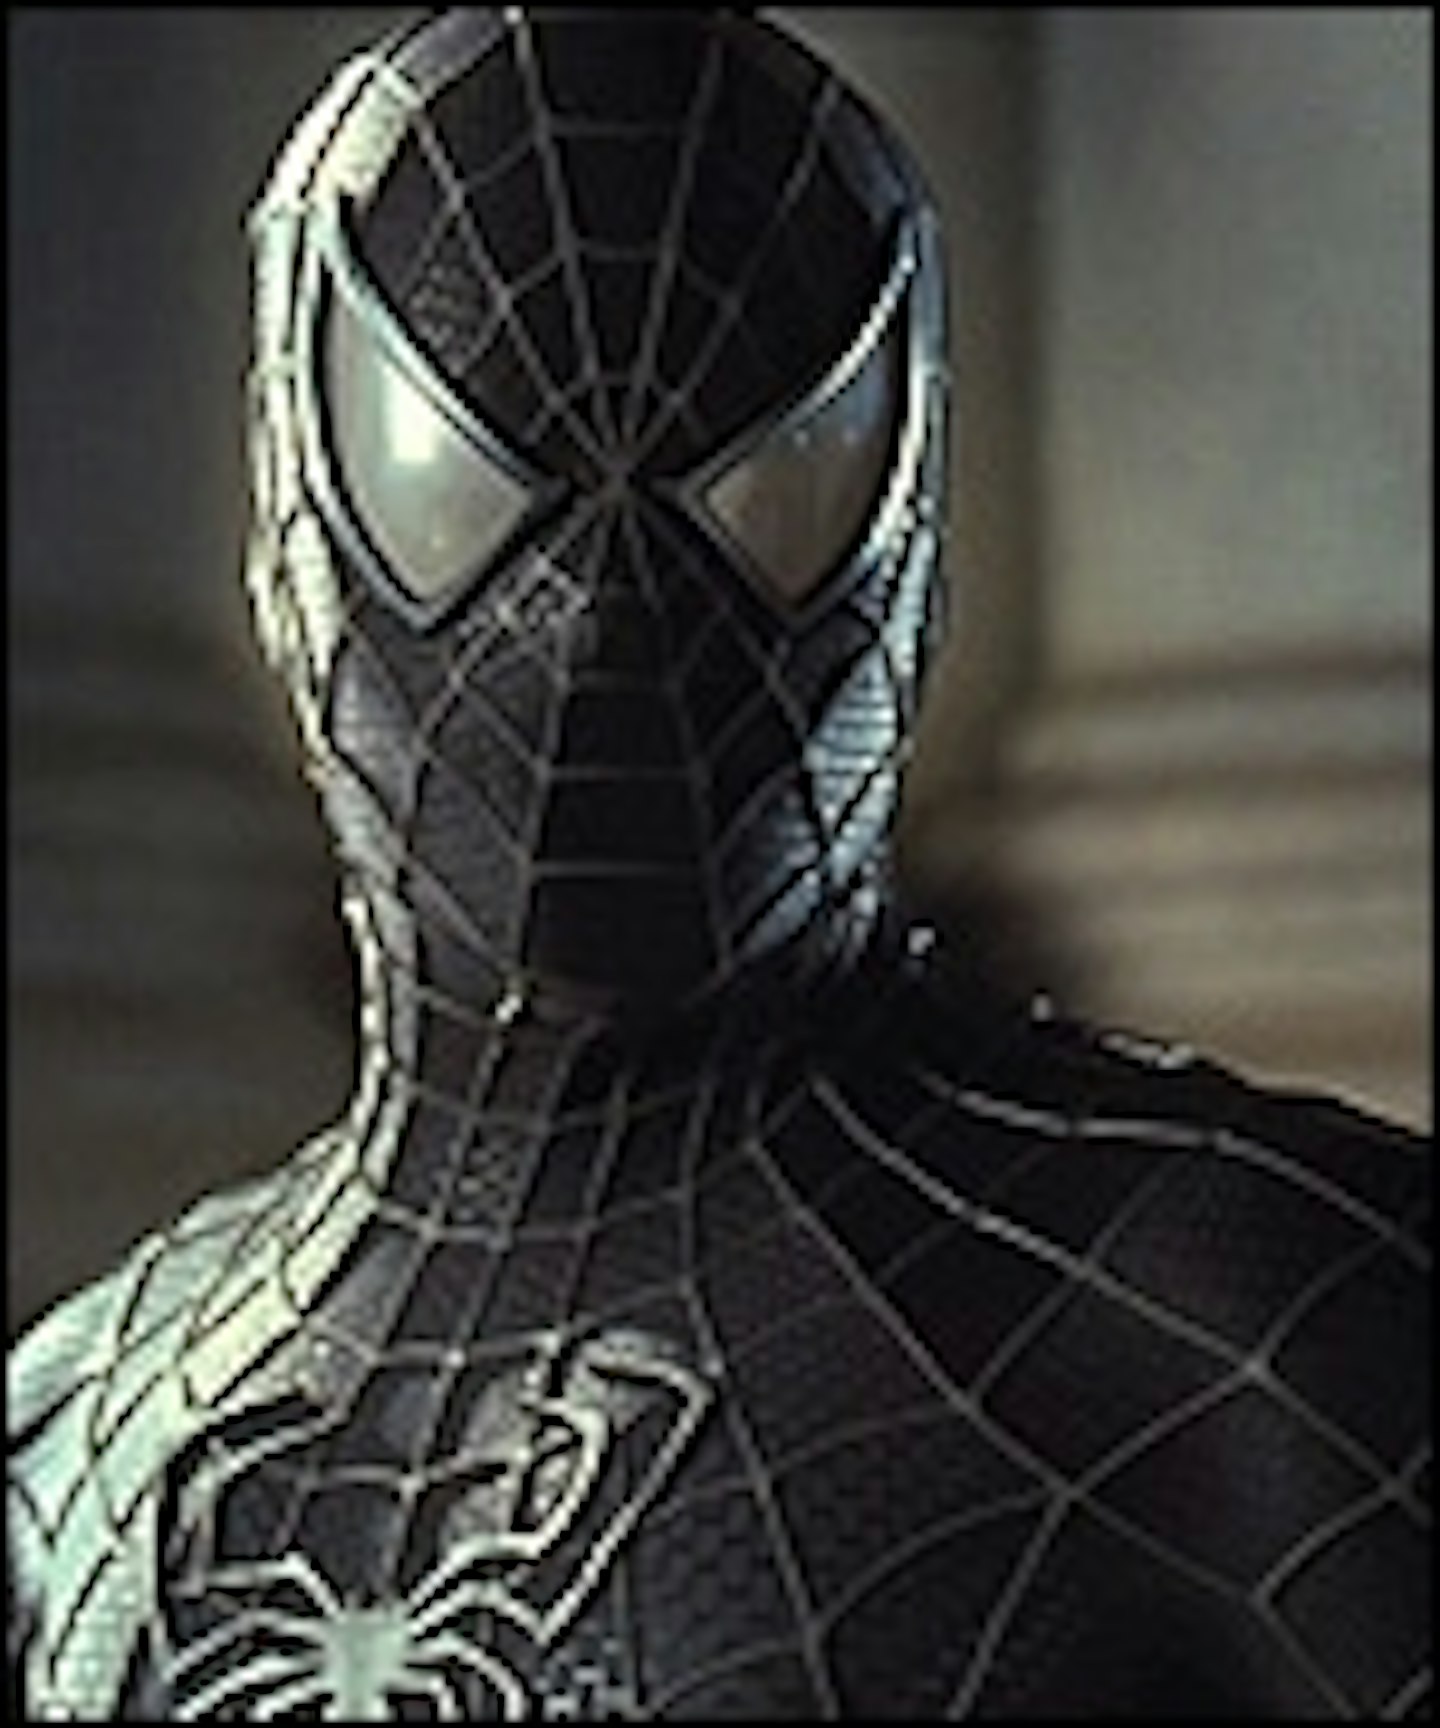 New Spider-Man 3 Footage Online